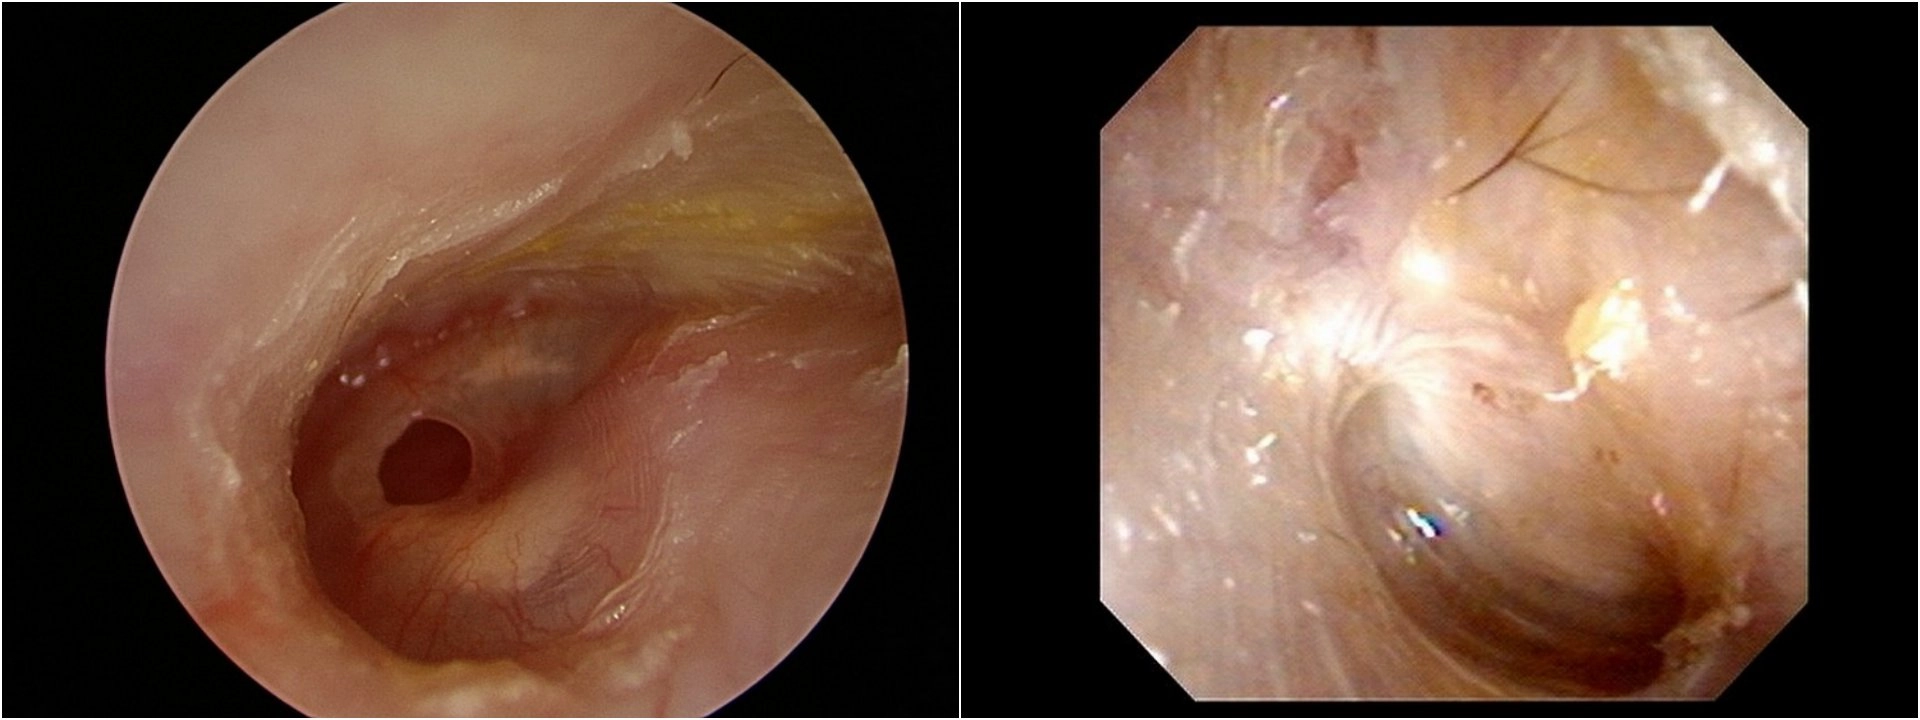 病人耳膜破損範圍占耳膜的15%，且經常出現分泌物、疼痛。內視鏡微創修補後三個月追蹤，耳膜已經順利增生修復。